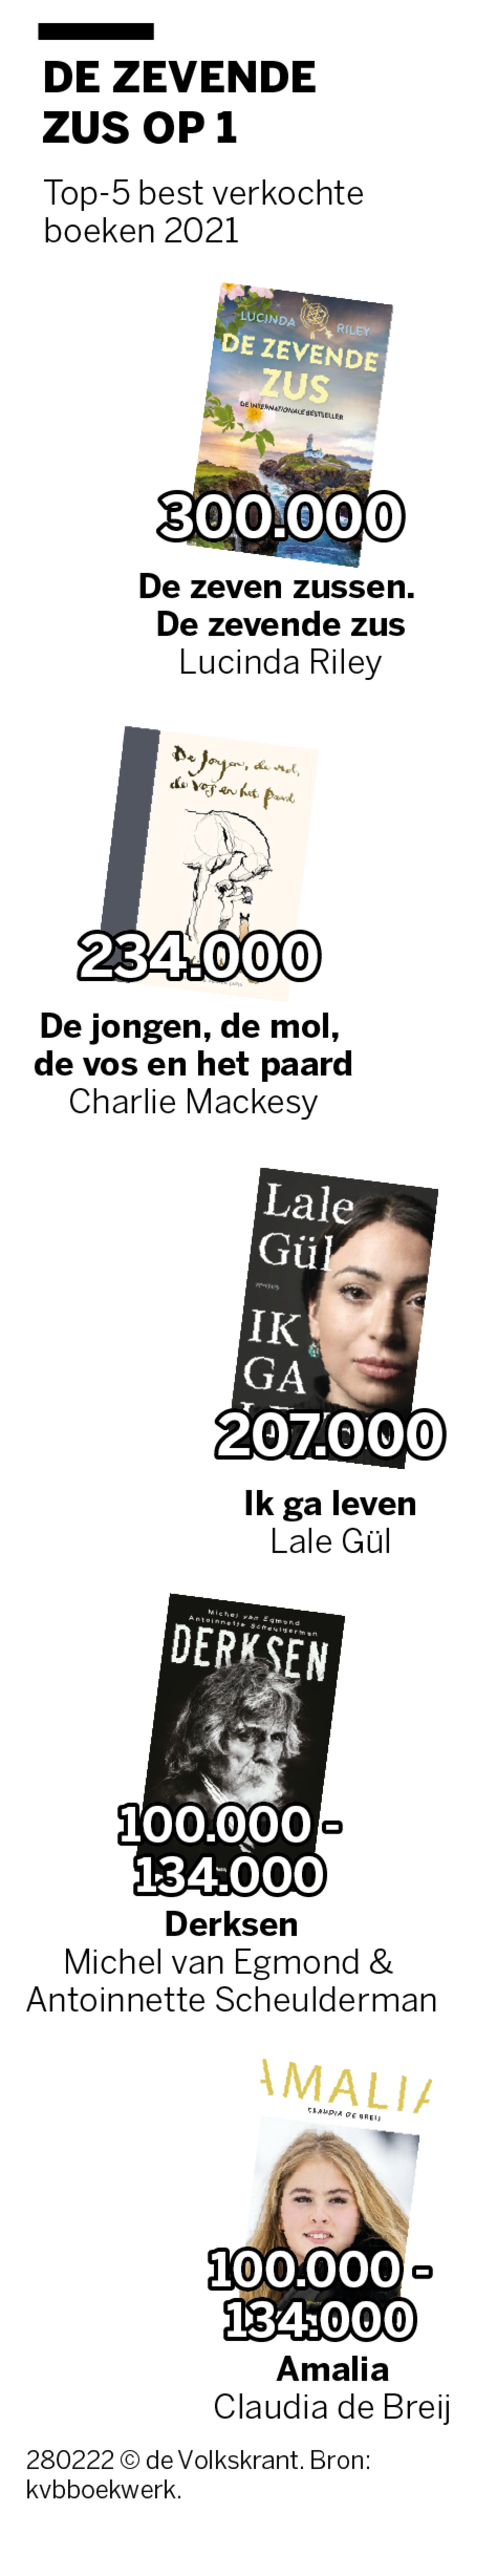 dier thuis Bederven Nederlandse boekenverkoop in 2021 voor het eerst vaker online dan in de  winkel, Lucinda Riley meest verkocht